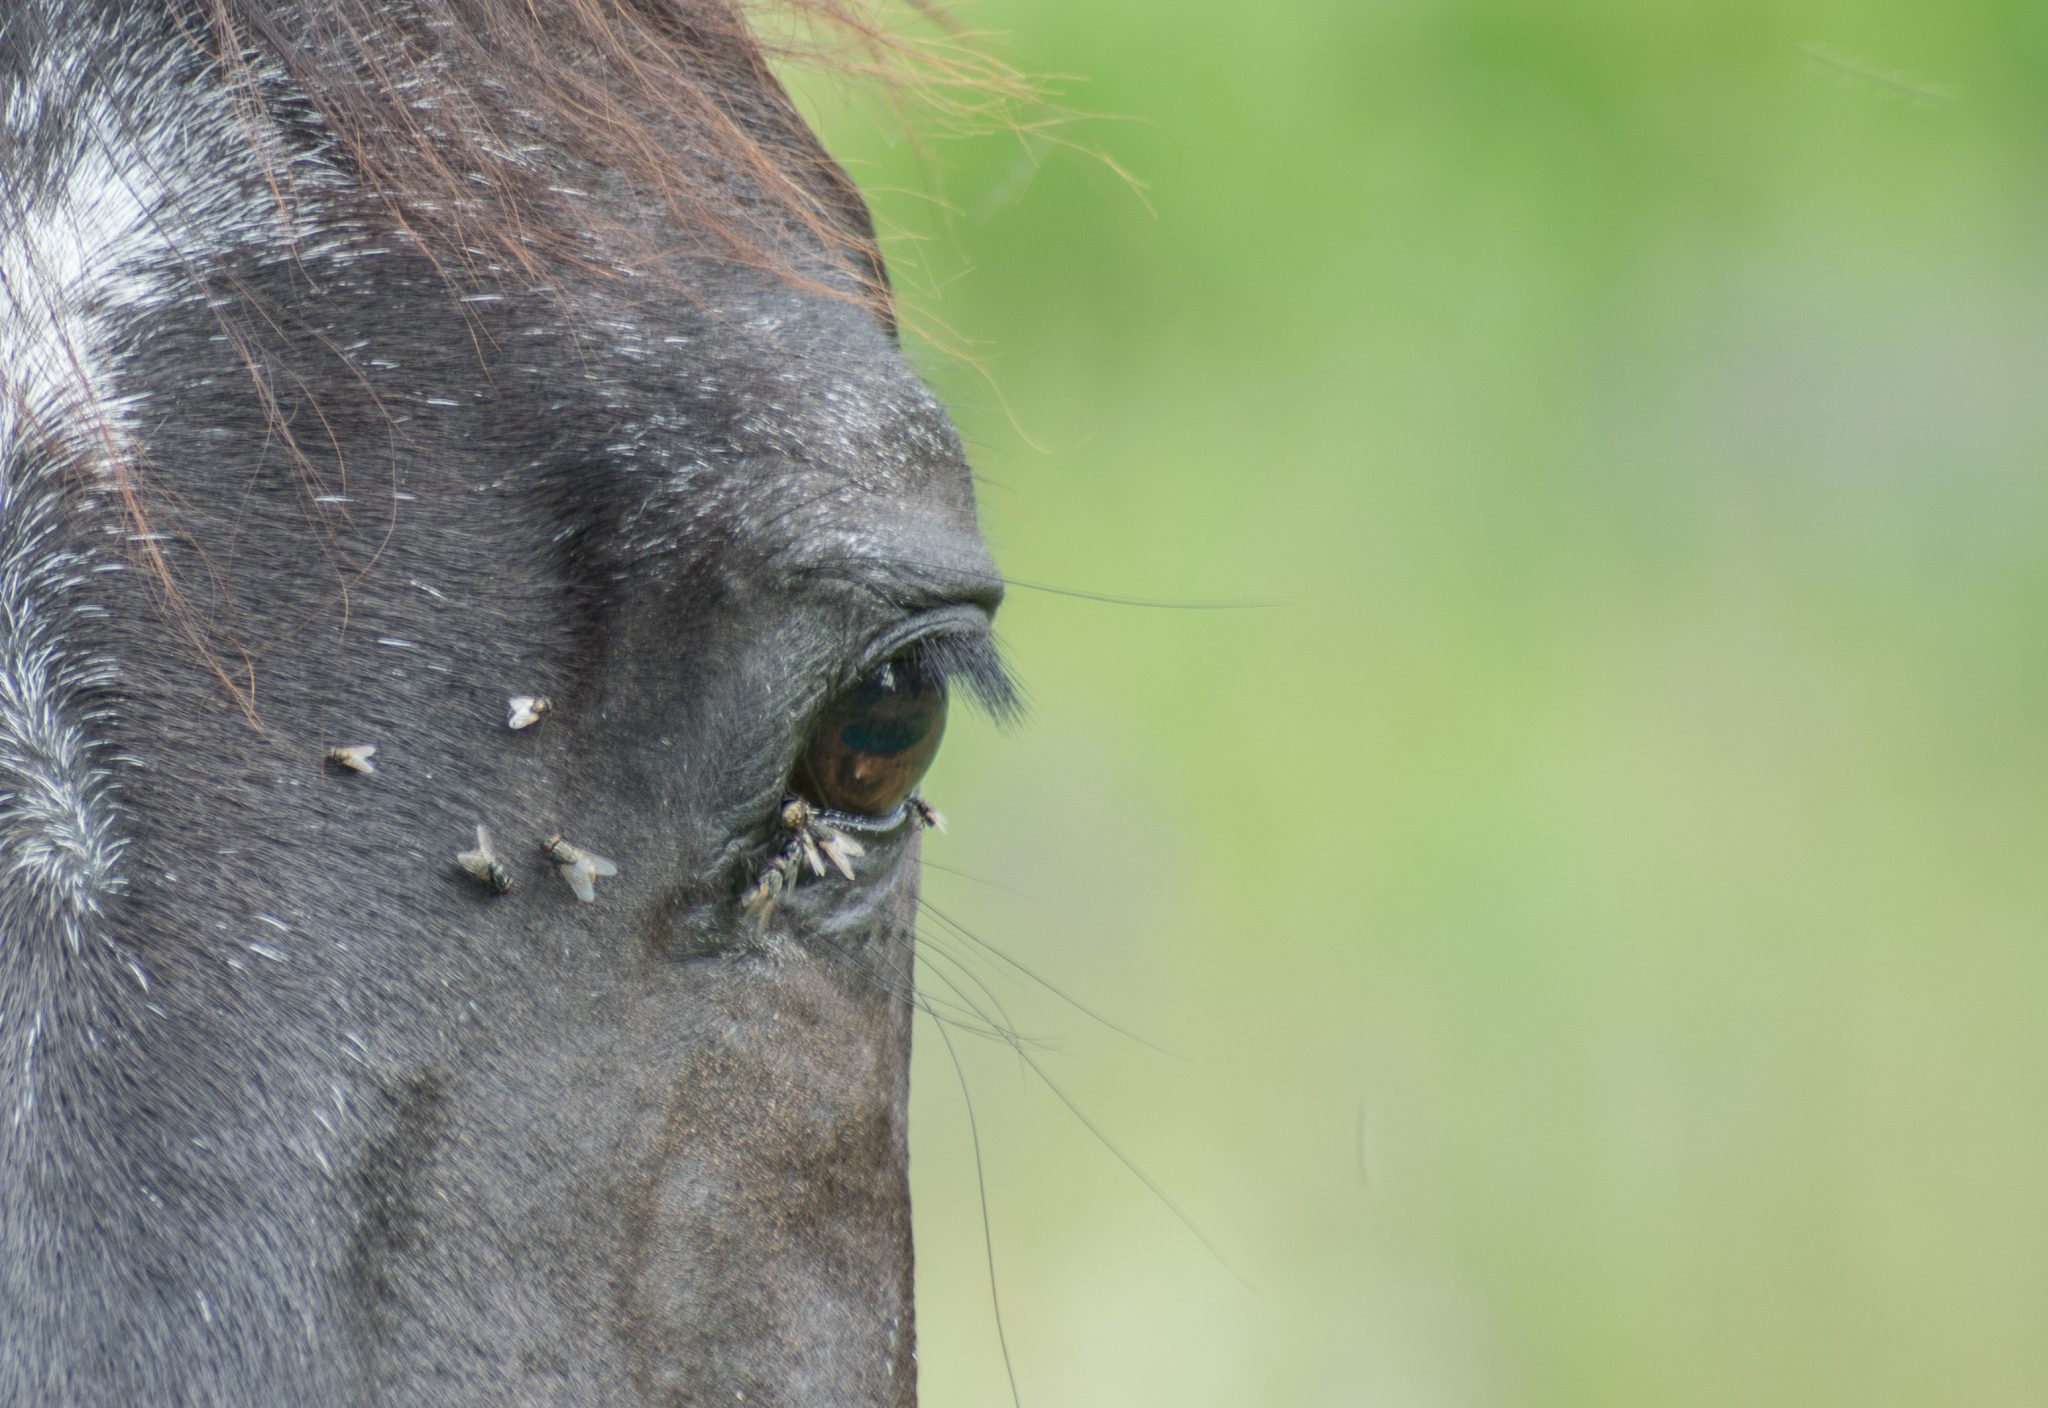 Black horse eye with flies near it